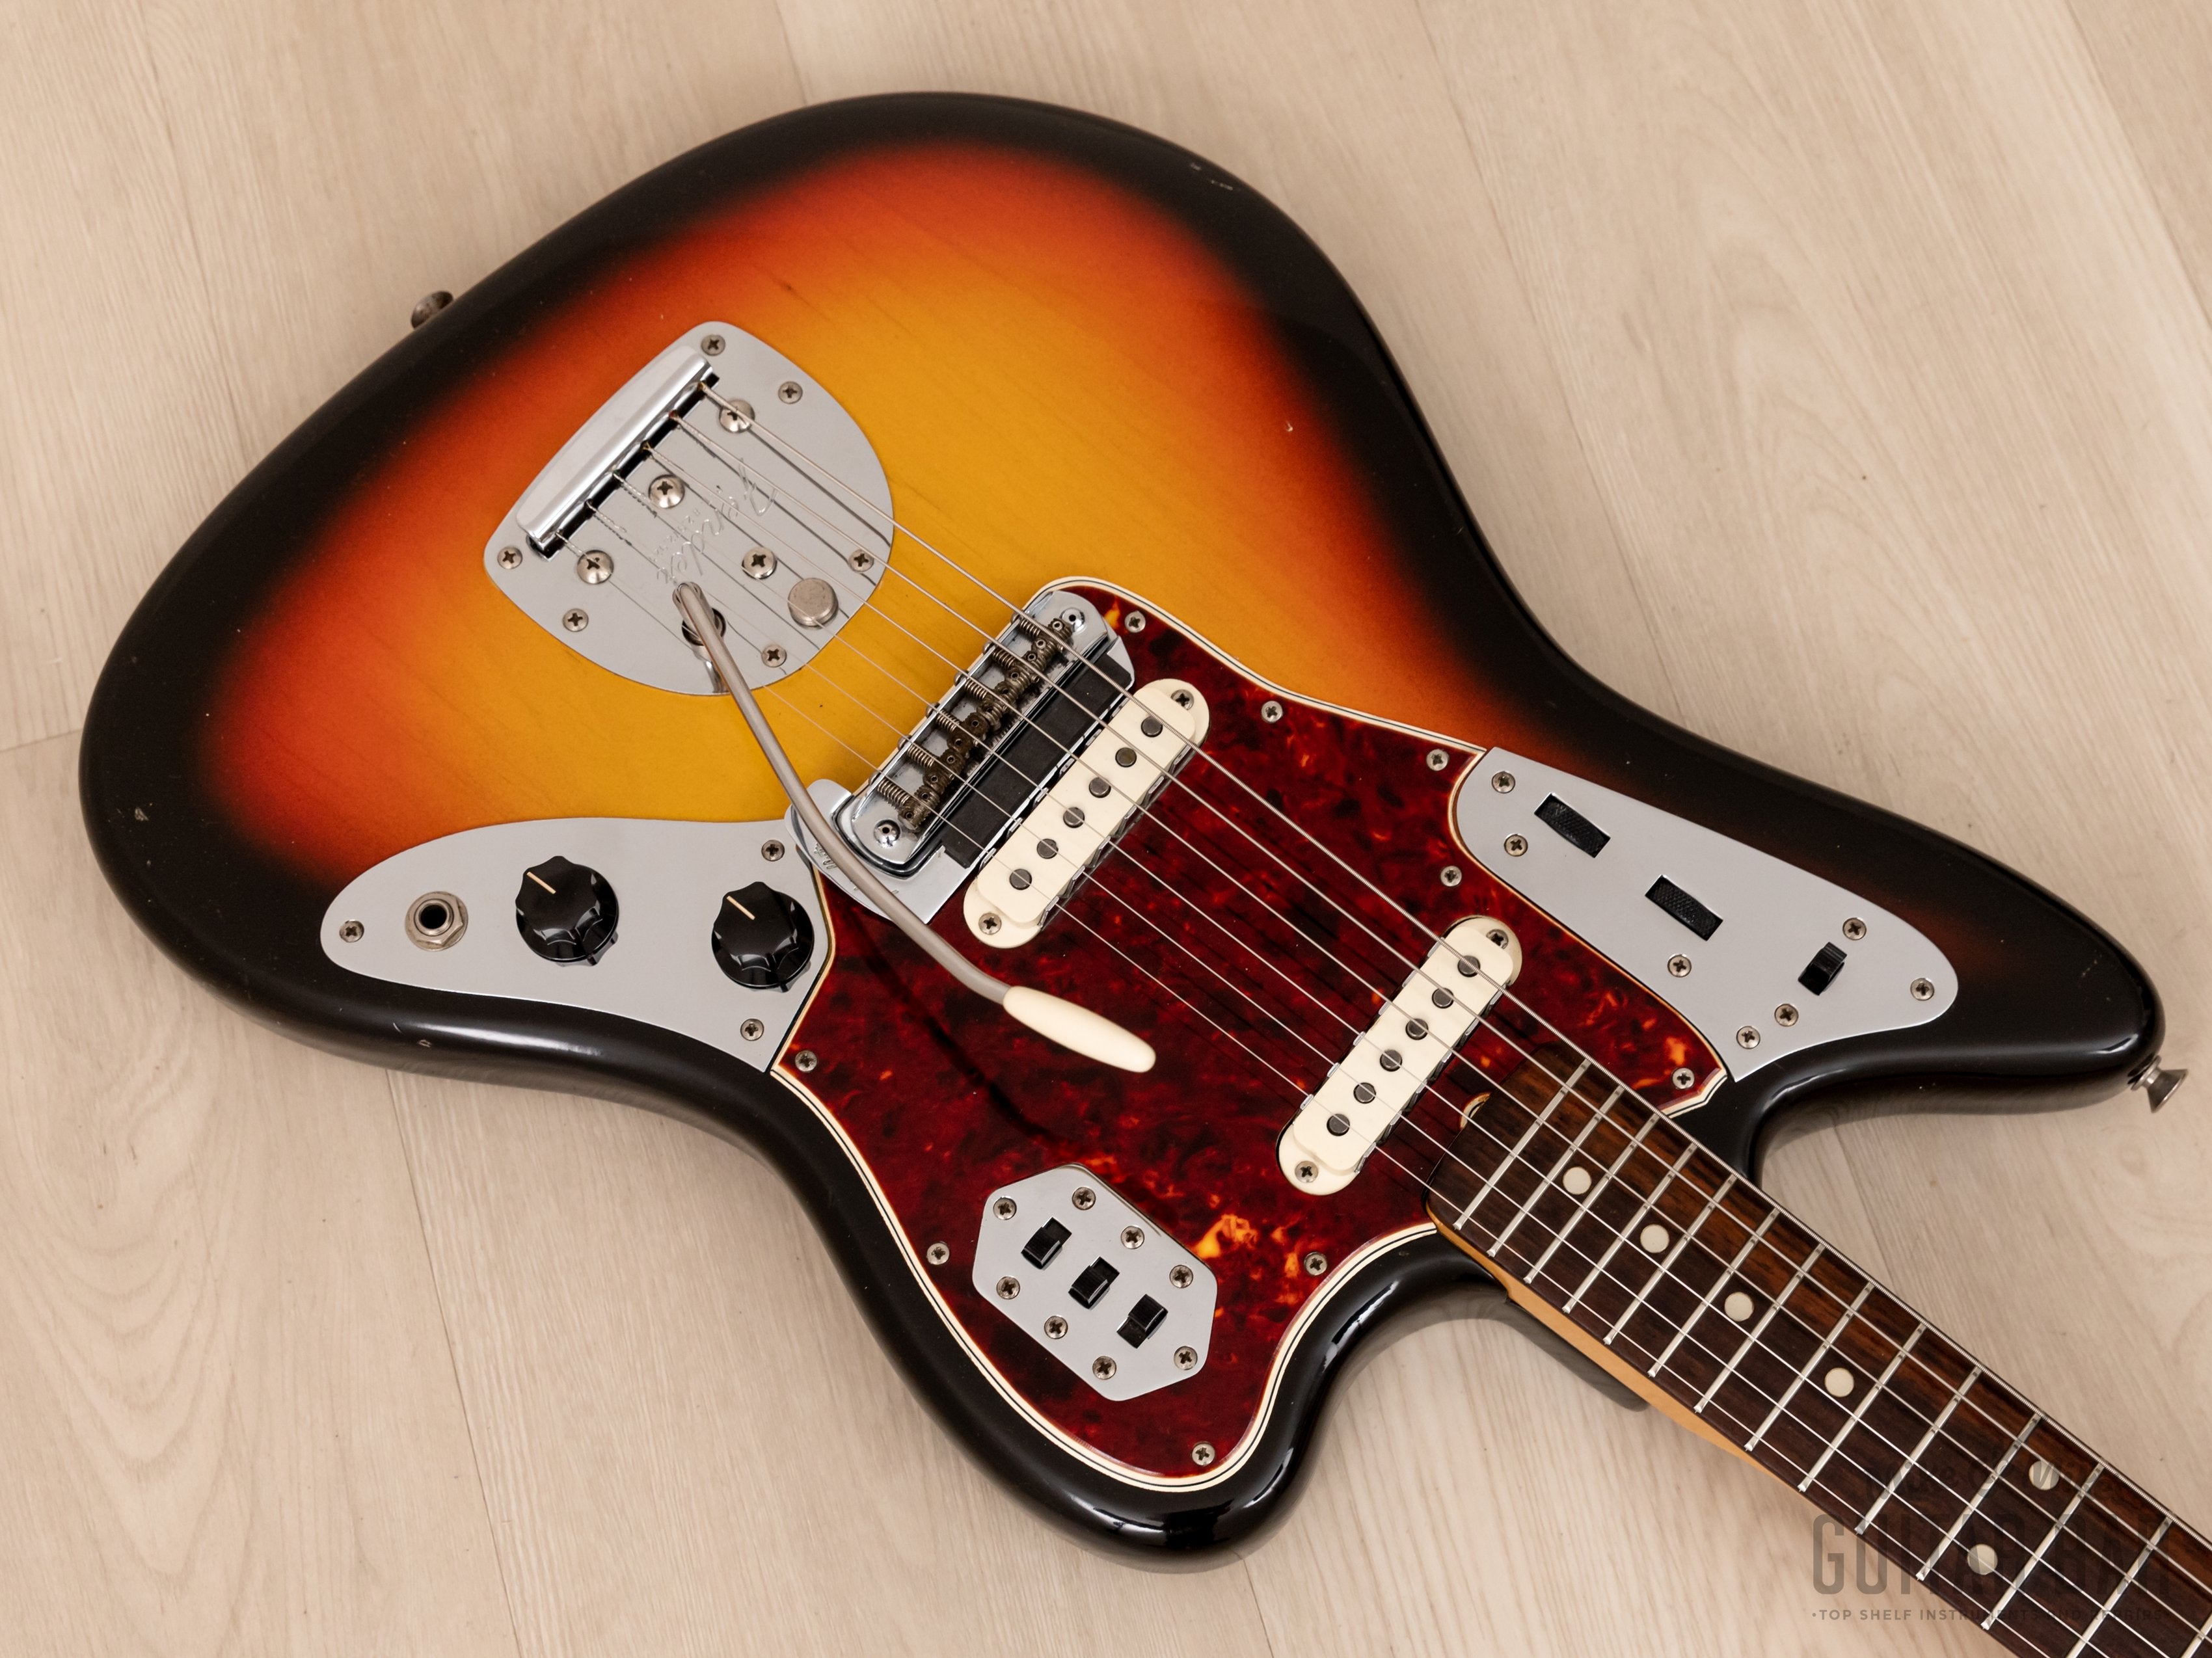 1965 Fender Jaguar Vintage Offset Guitar Sunburst, Collector Grade w/ Case